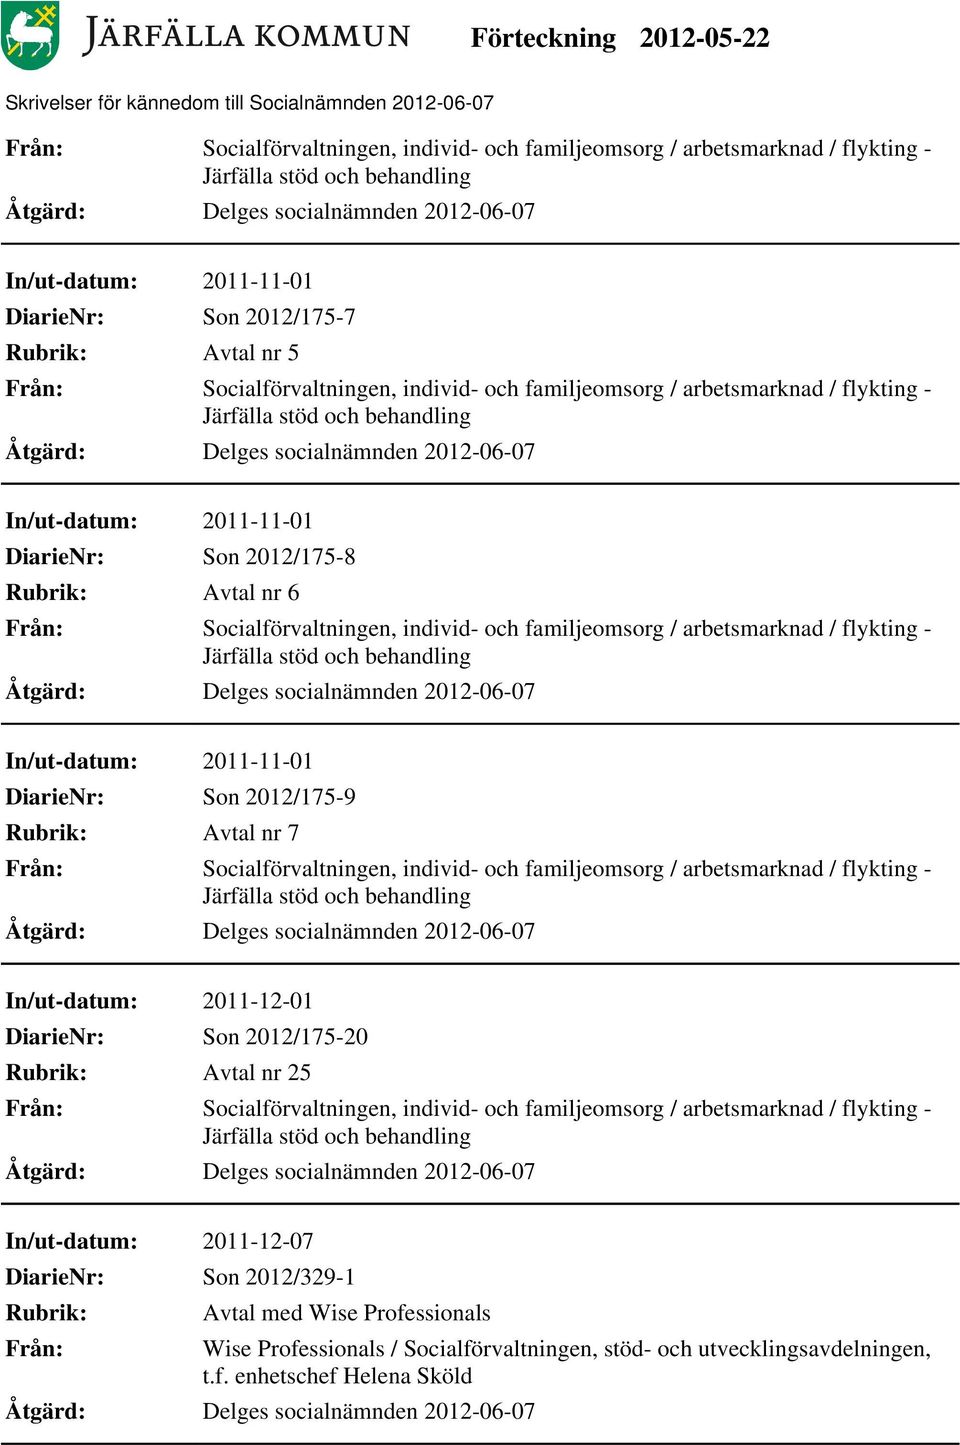 arbetsmarknad / flykting - In/ut-datum: 2011-12-01 Son 2012/175-20 Avtal nr 25, individ- och familjeomsorg / arbetsmarknad / flykting -